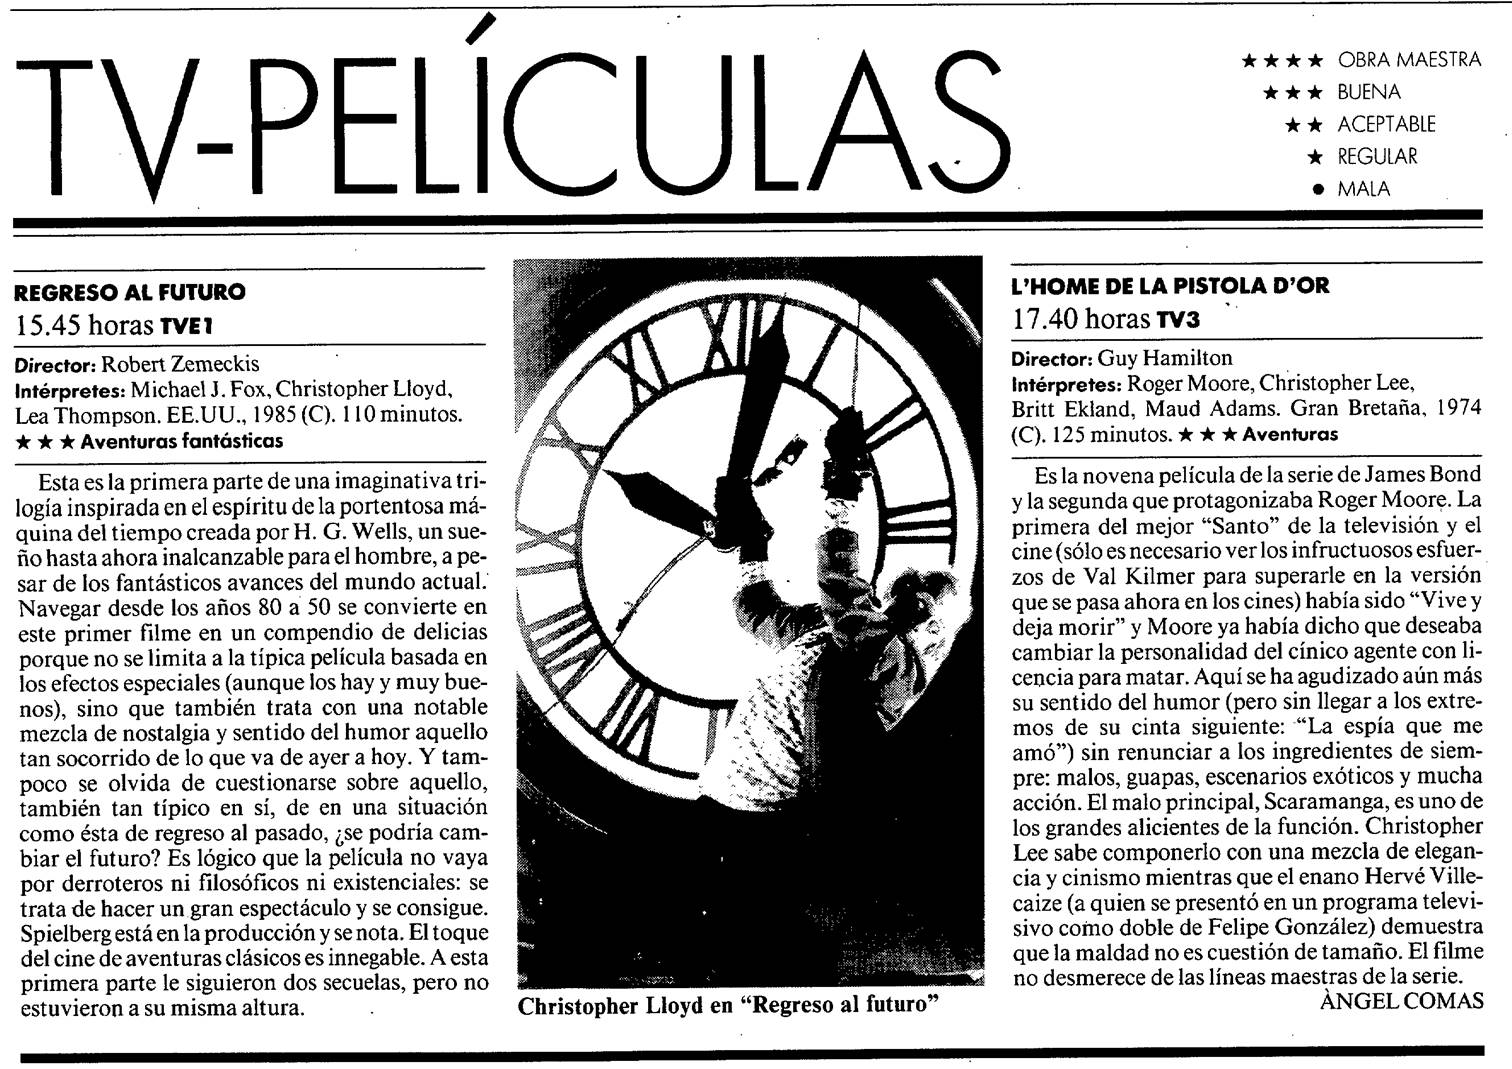 09 1997 05 25 La Vanguardia Revista 010 TV3